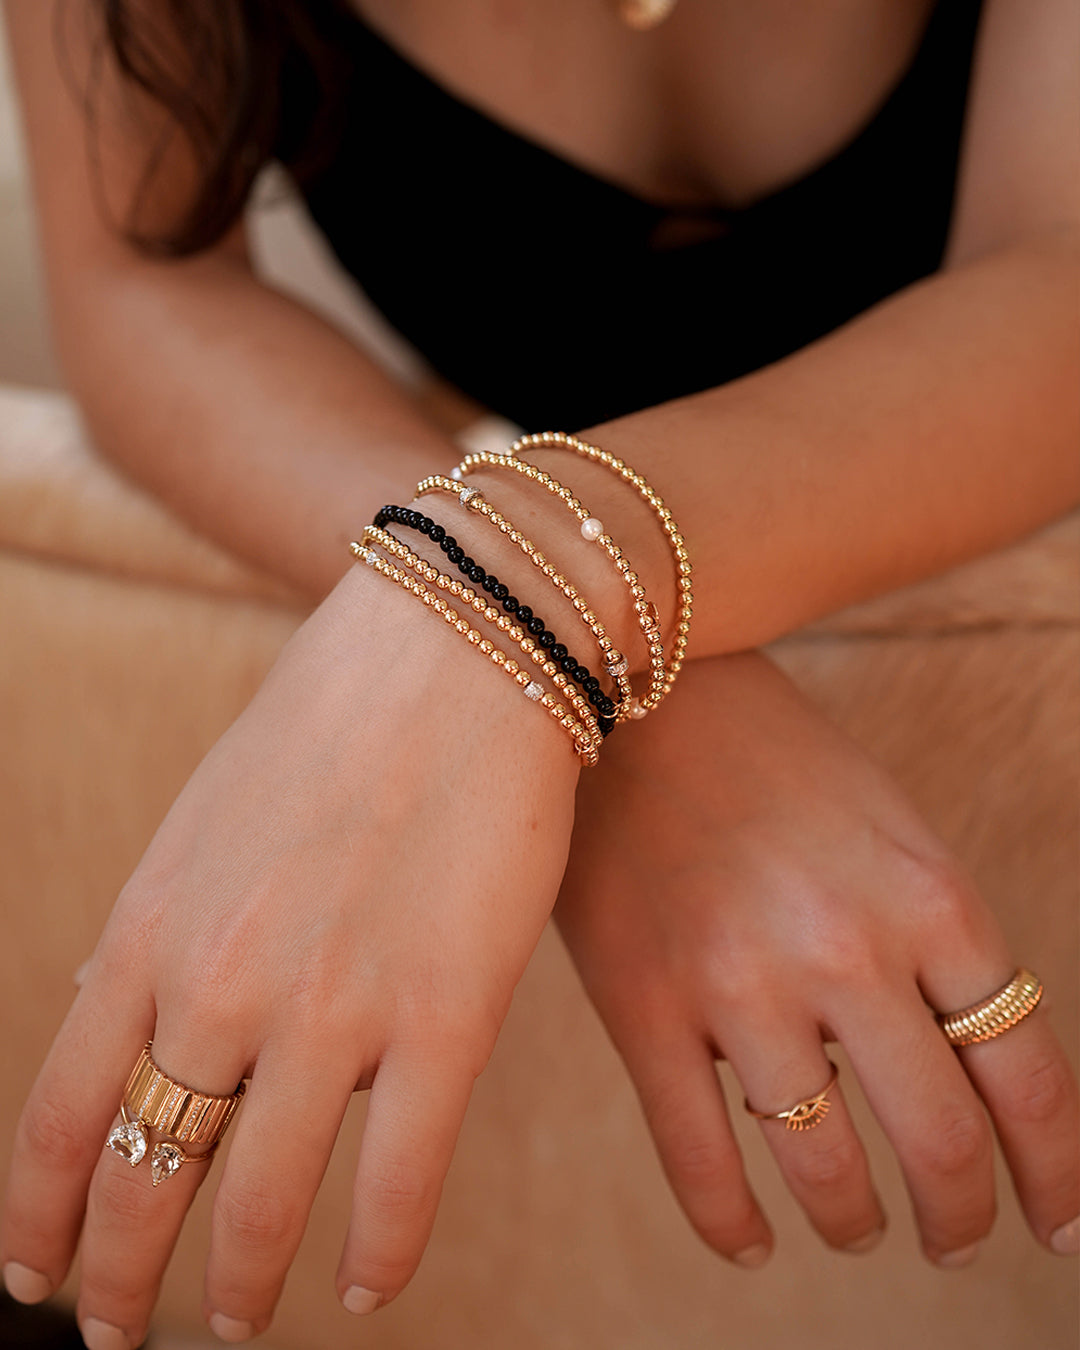 Hazel Adult Bracelet (3mm + 4mm Beads) 7.5 Inches / Gold Filled